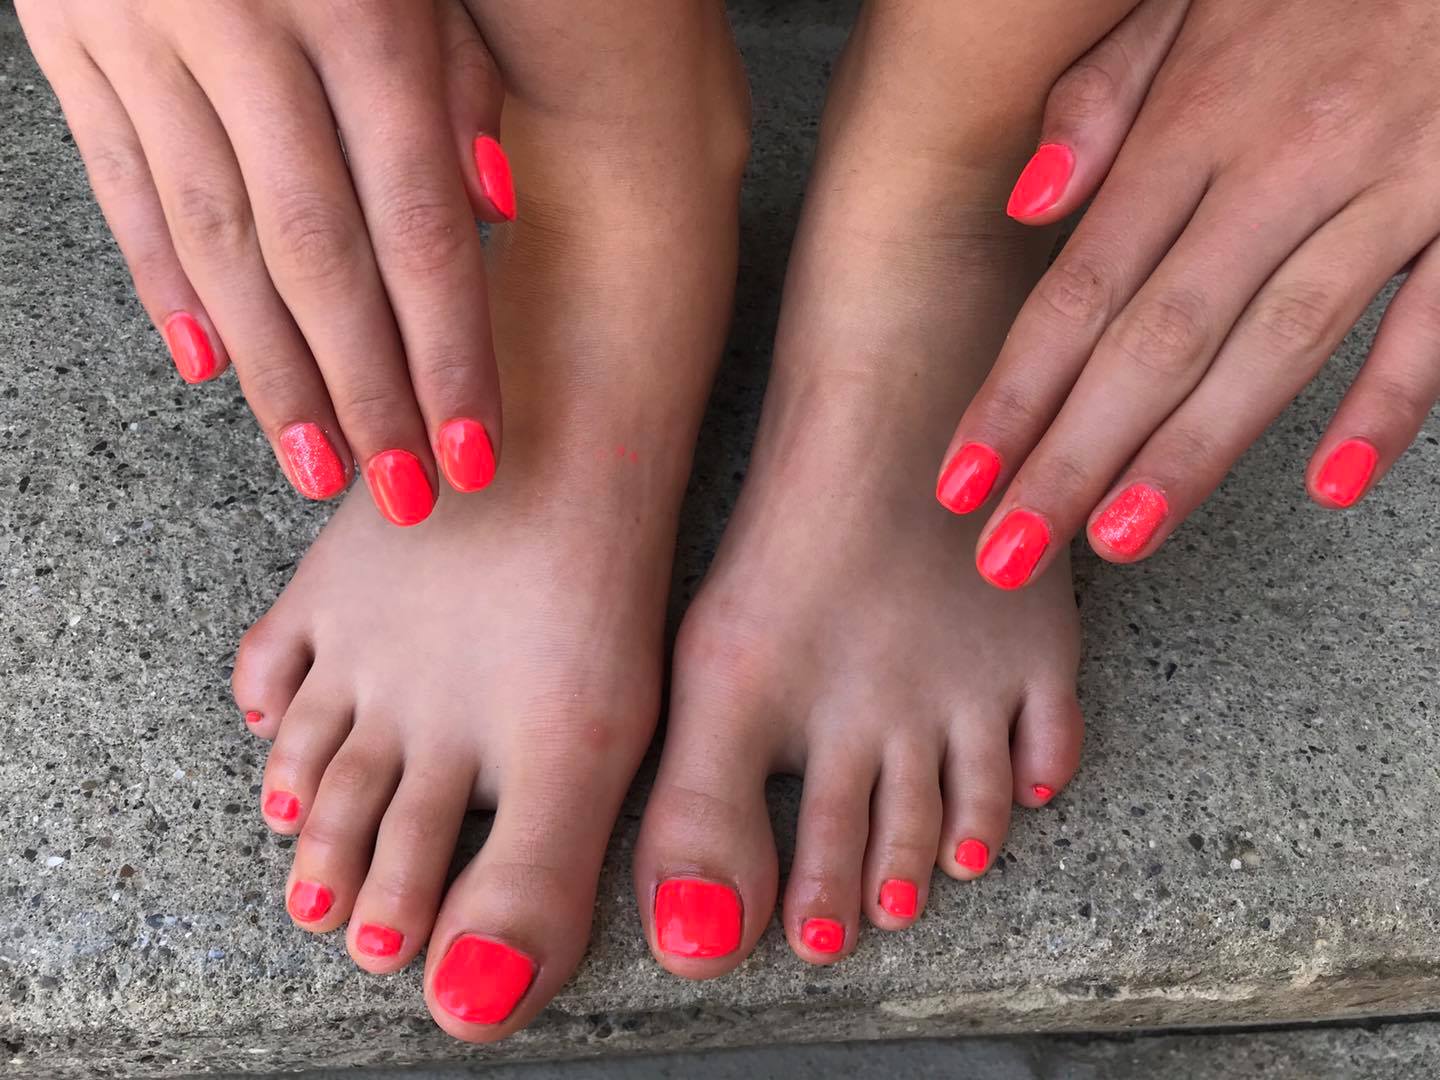 pieds_mains_orange